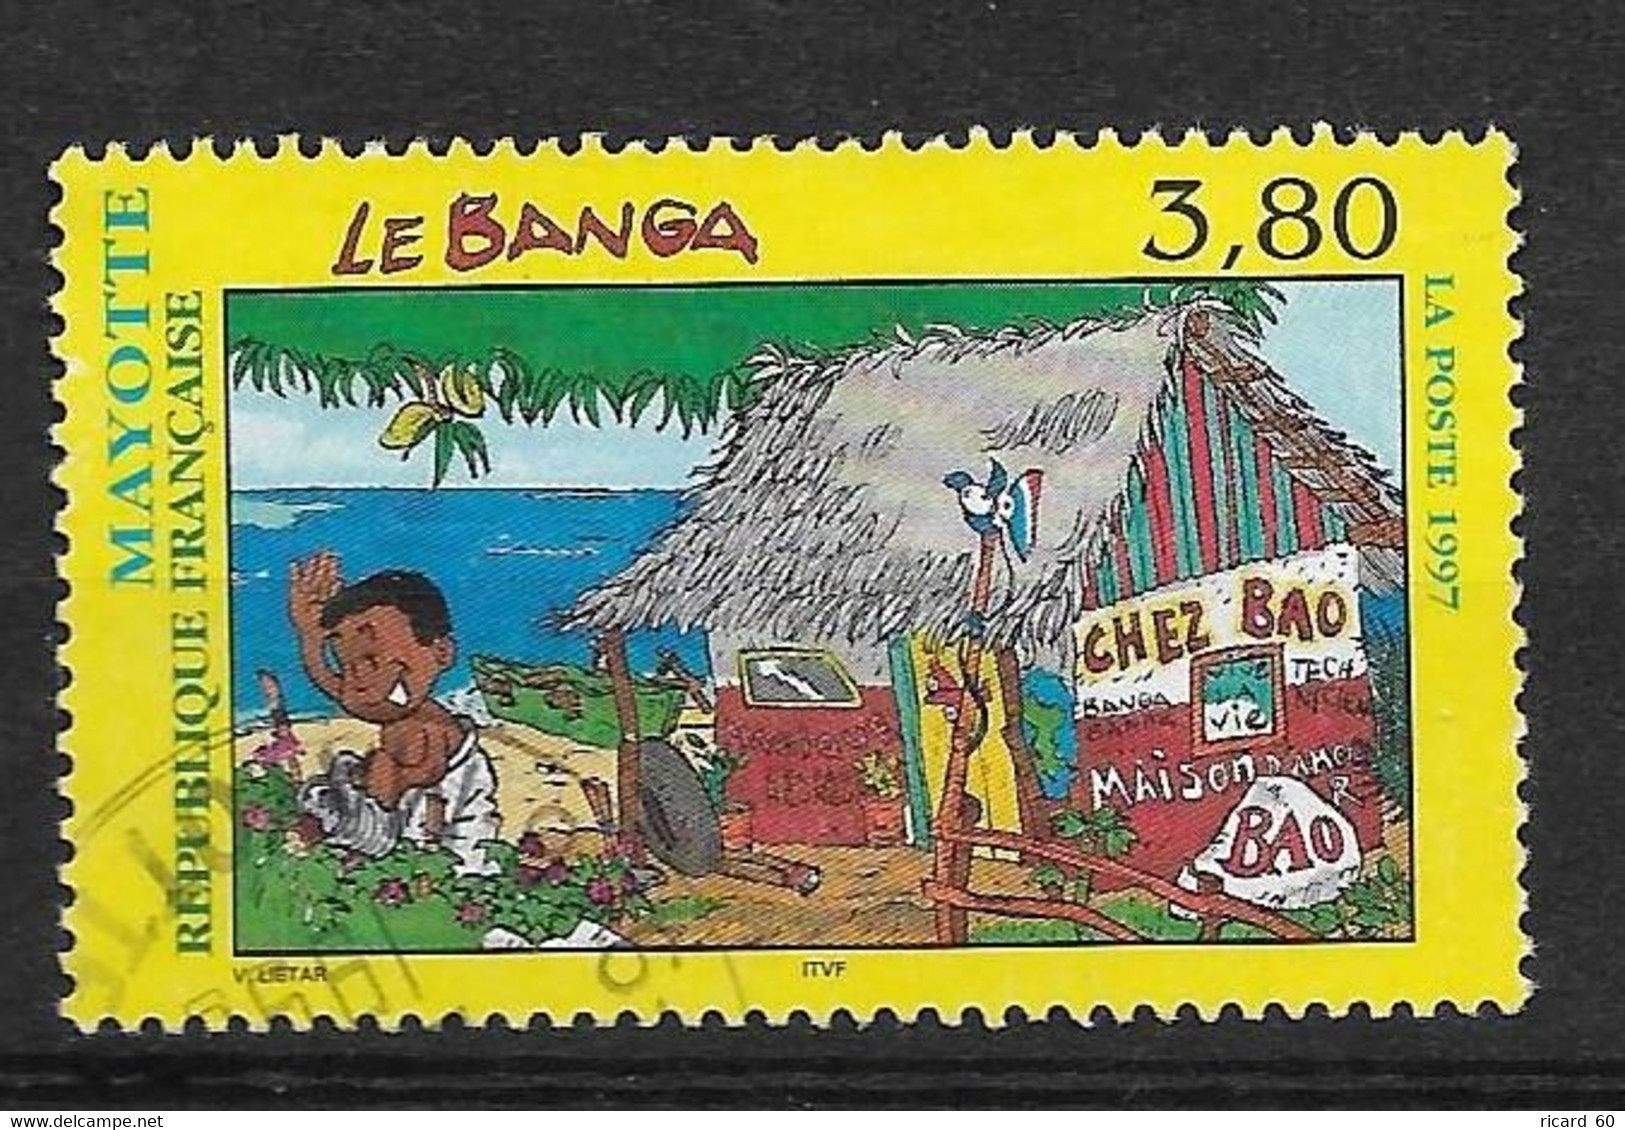 Timbres Oblitérés De Mayotte, N°45 YT, Le Banga, Enfant Arrosant Les Fleurs - Oblitérés